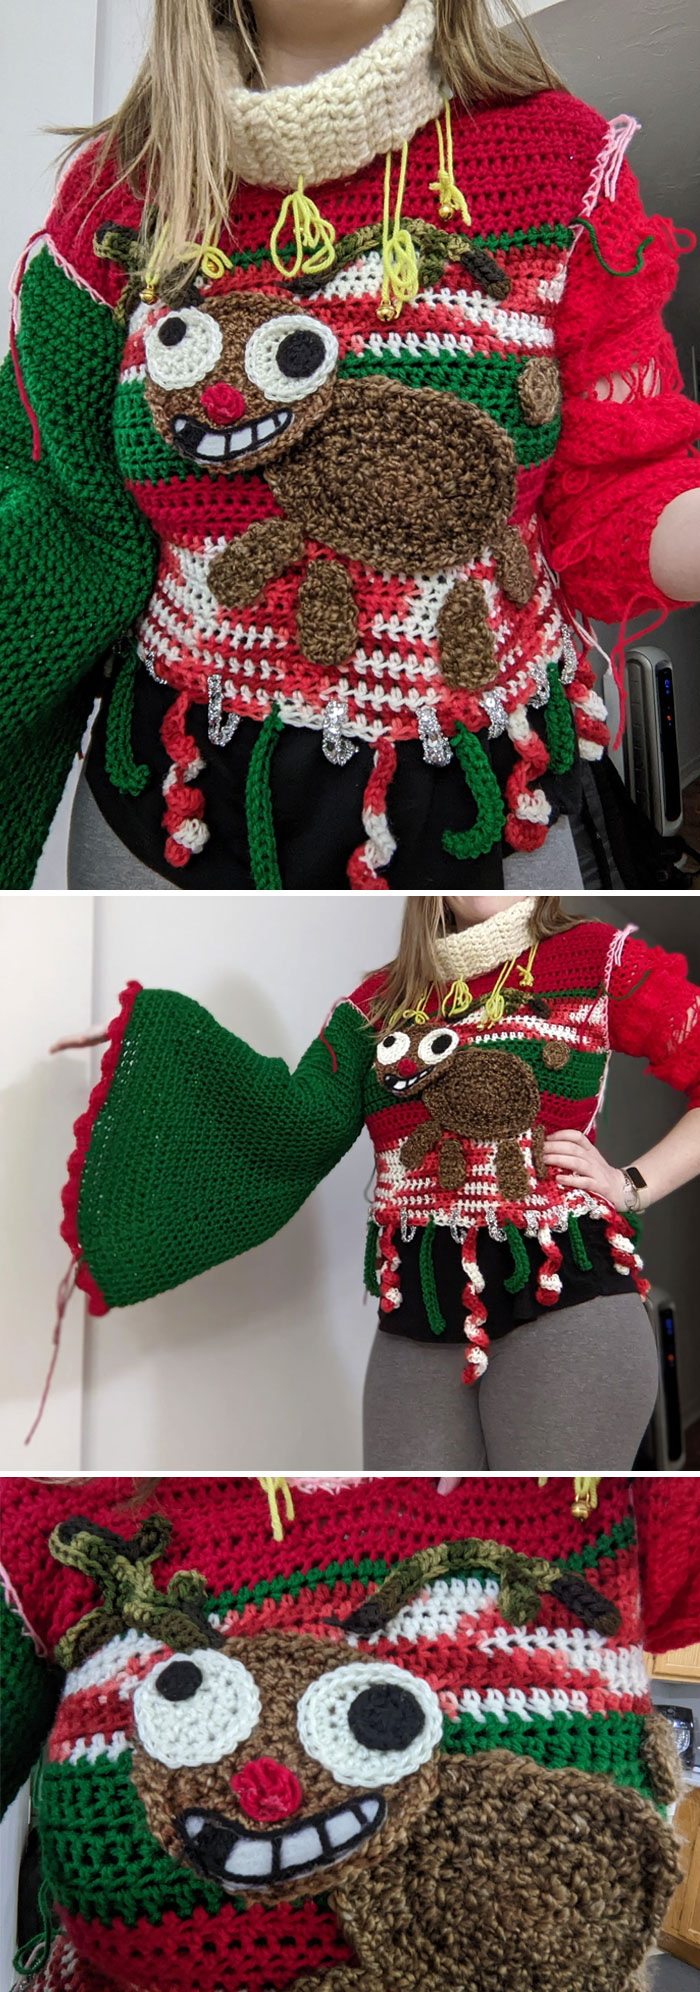 ¿Dices concurso de suéteres feos de Navidad? Lo hice todo a ganchillo sin tener ni idea de cómo se hace un jersey. Gané